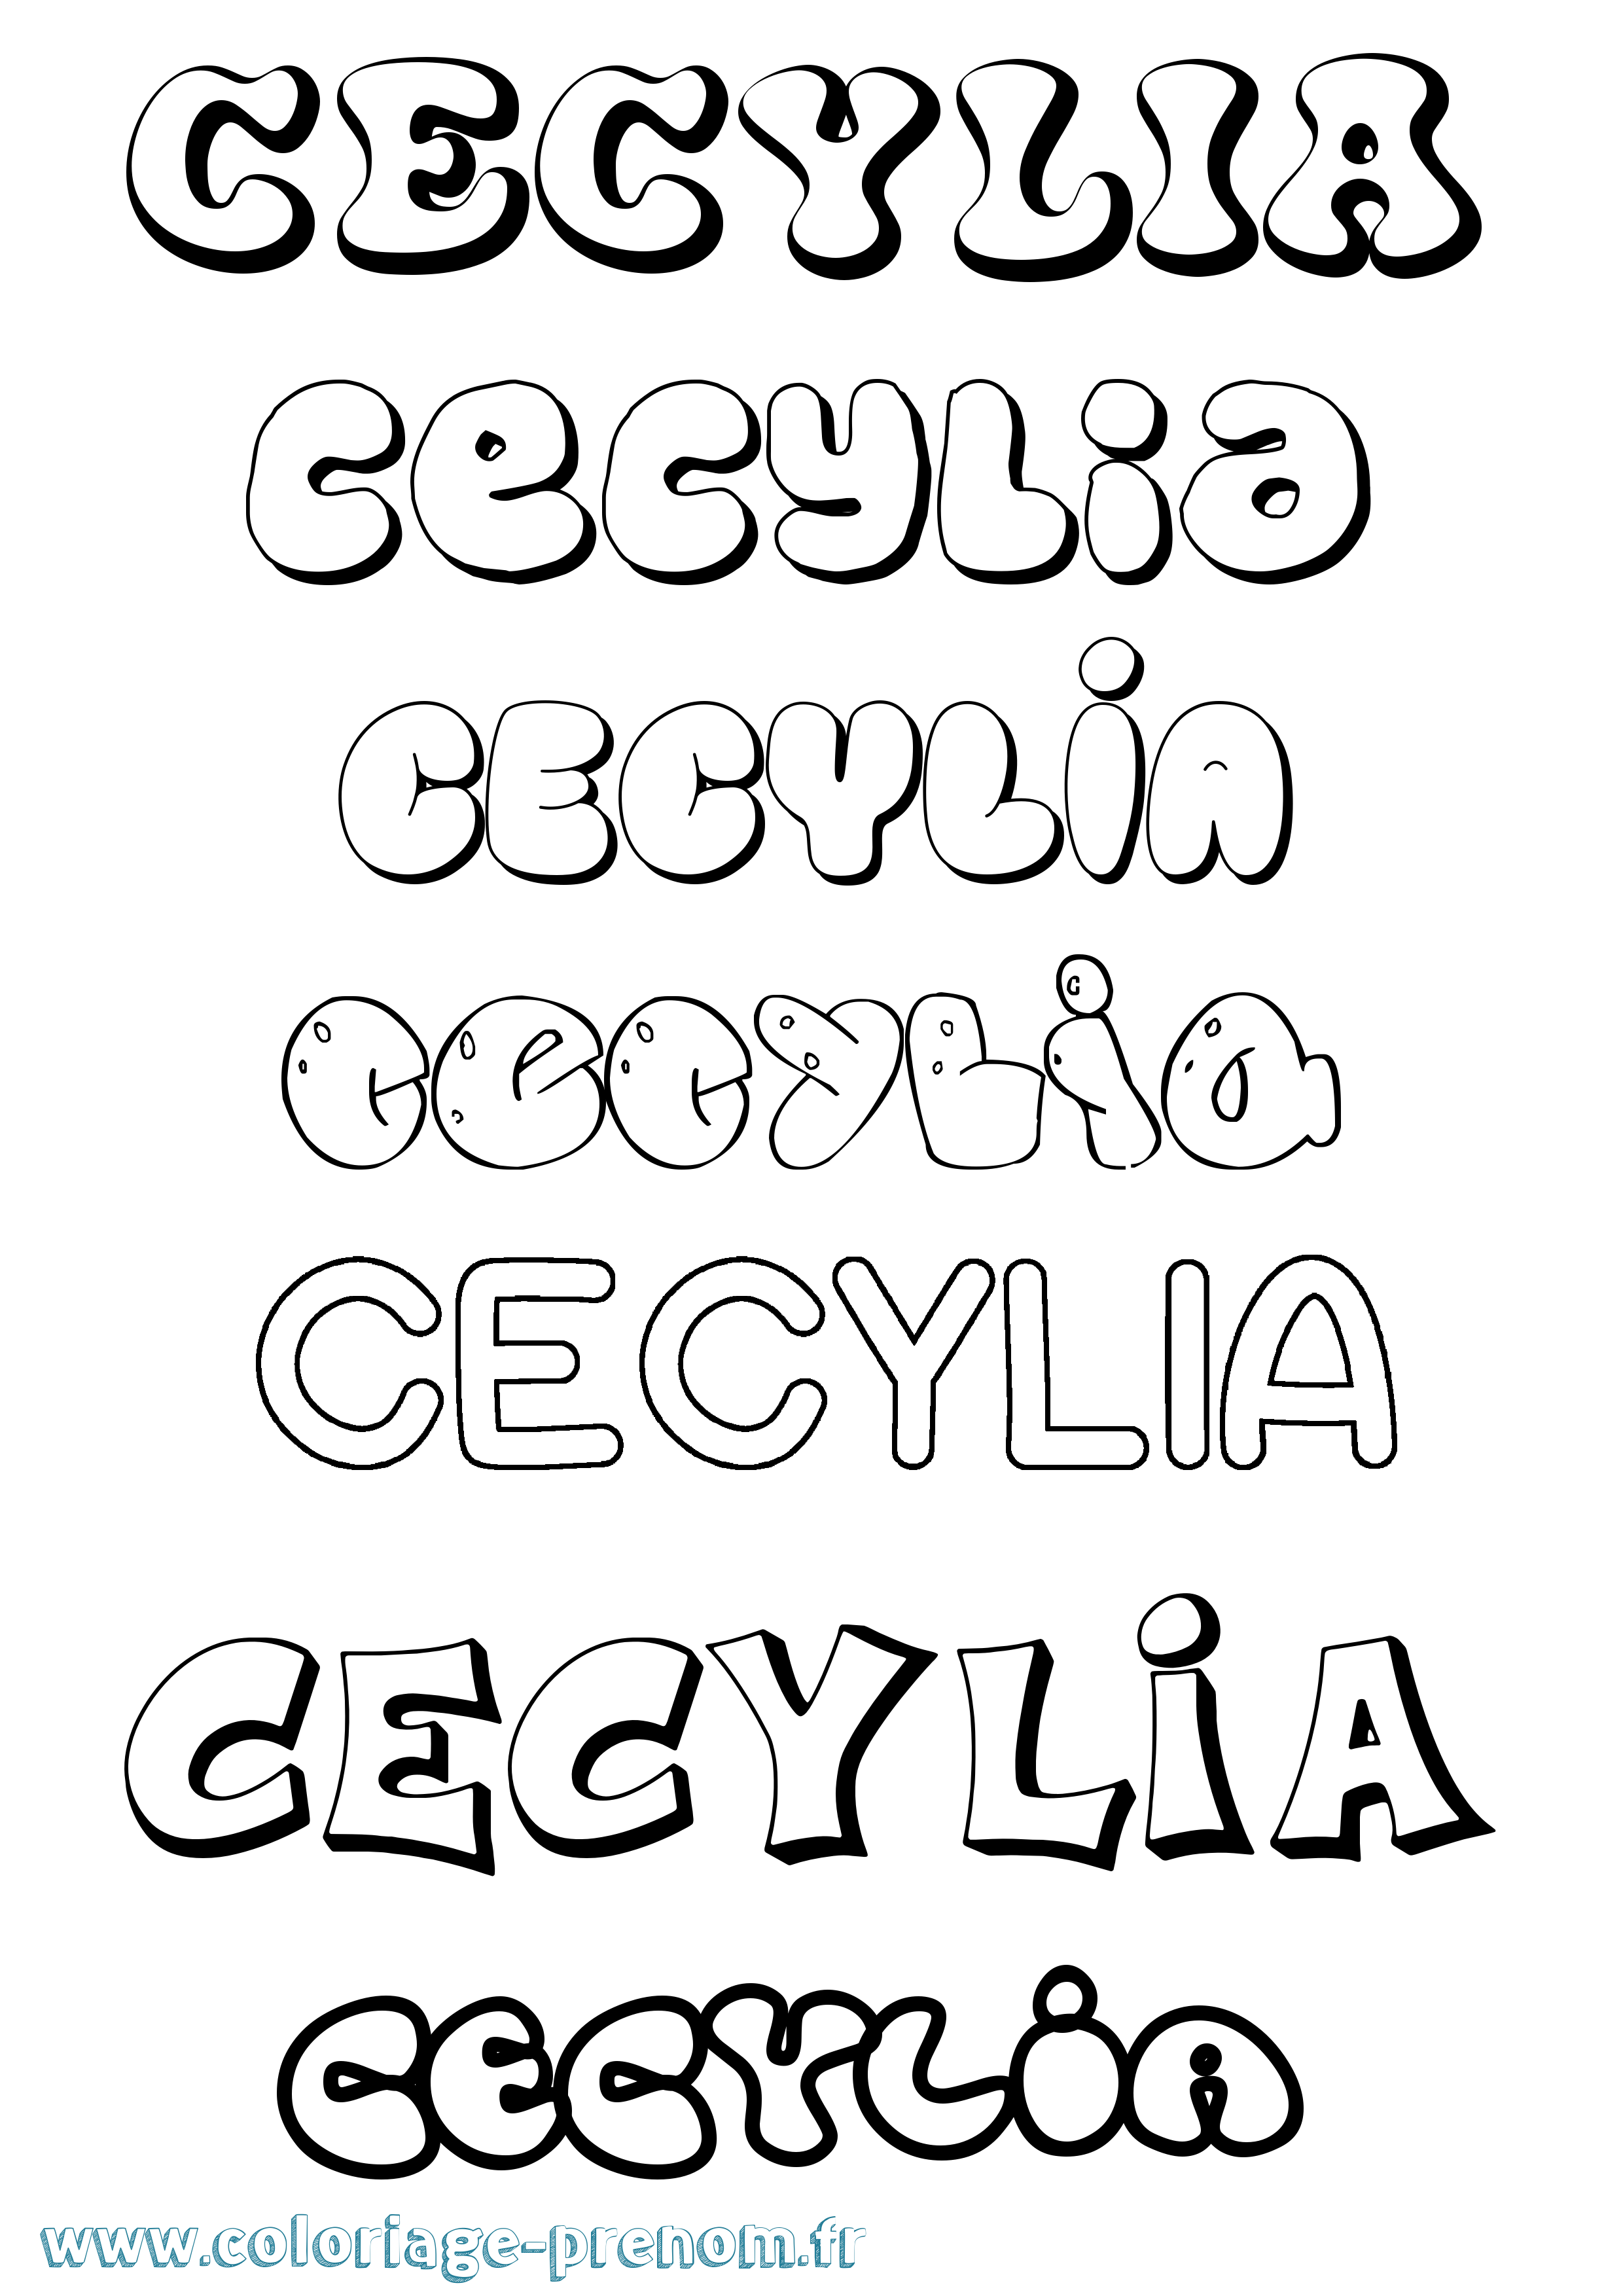 Coloriage prénom Cecylia Bubble